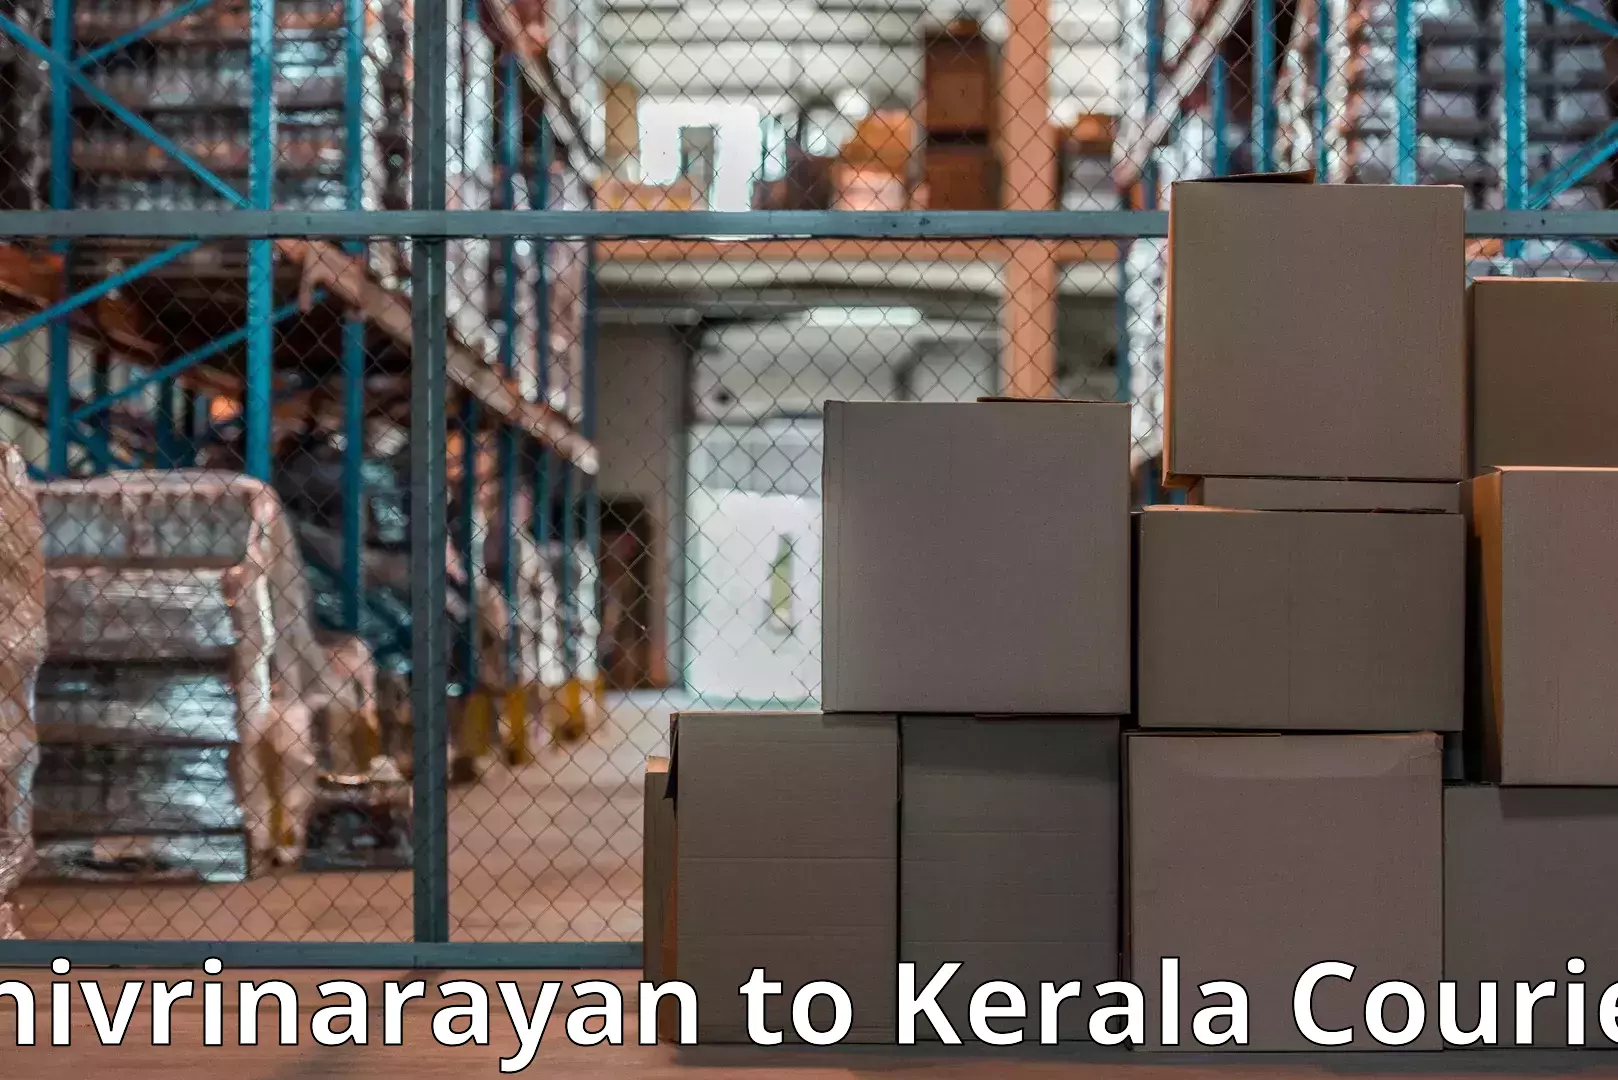 Professional packing services Shivrinarayan to Kerala